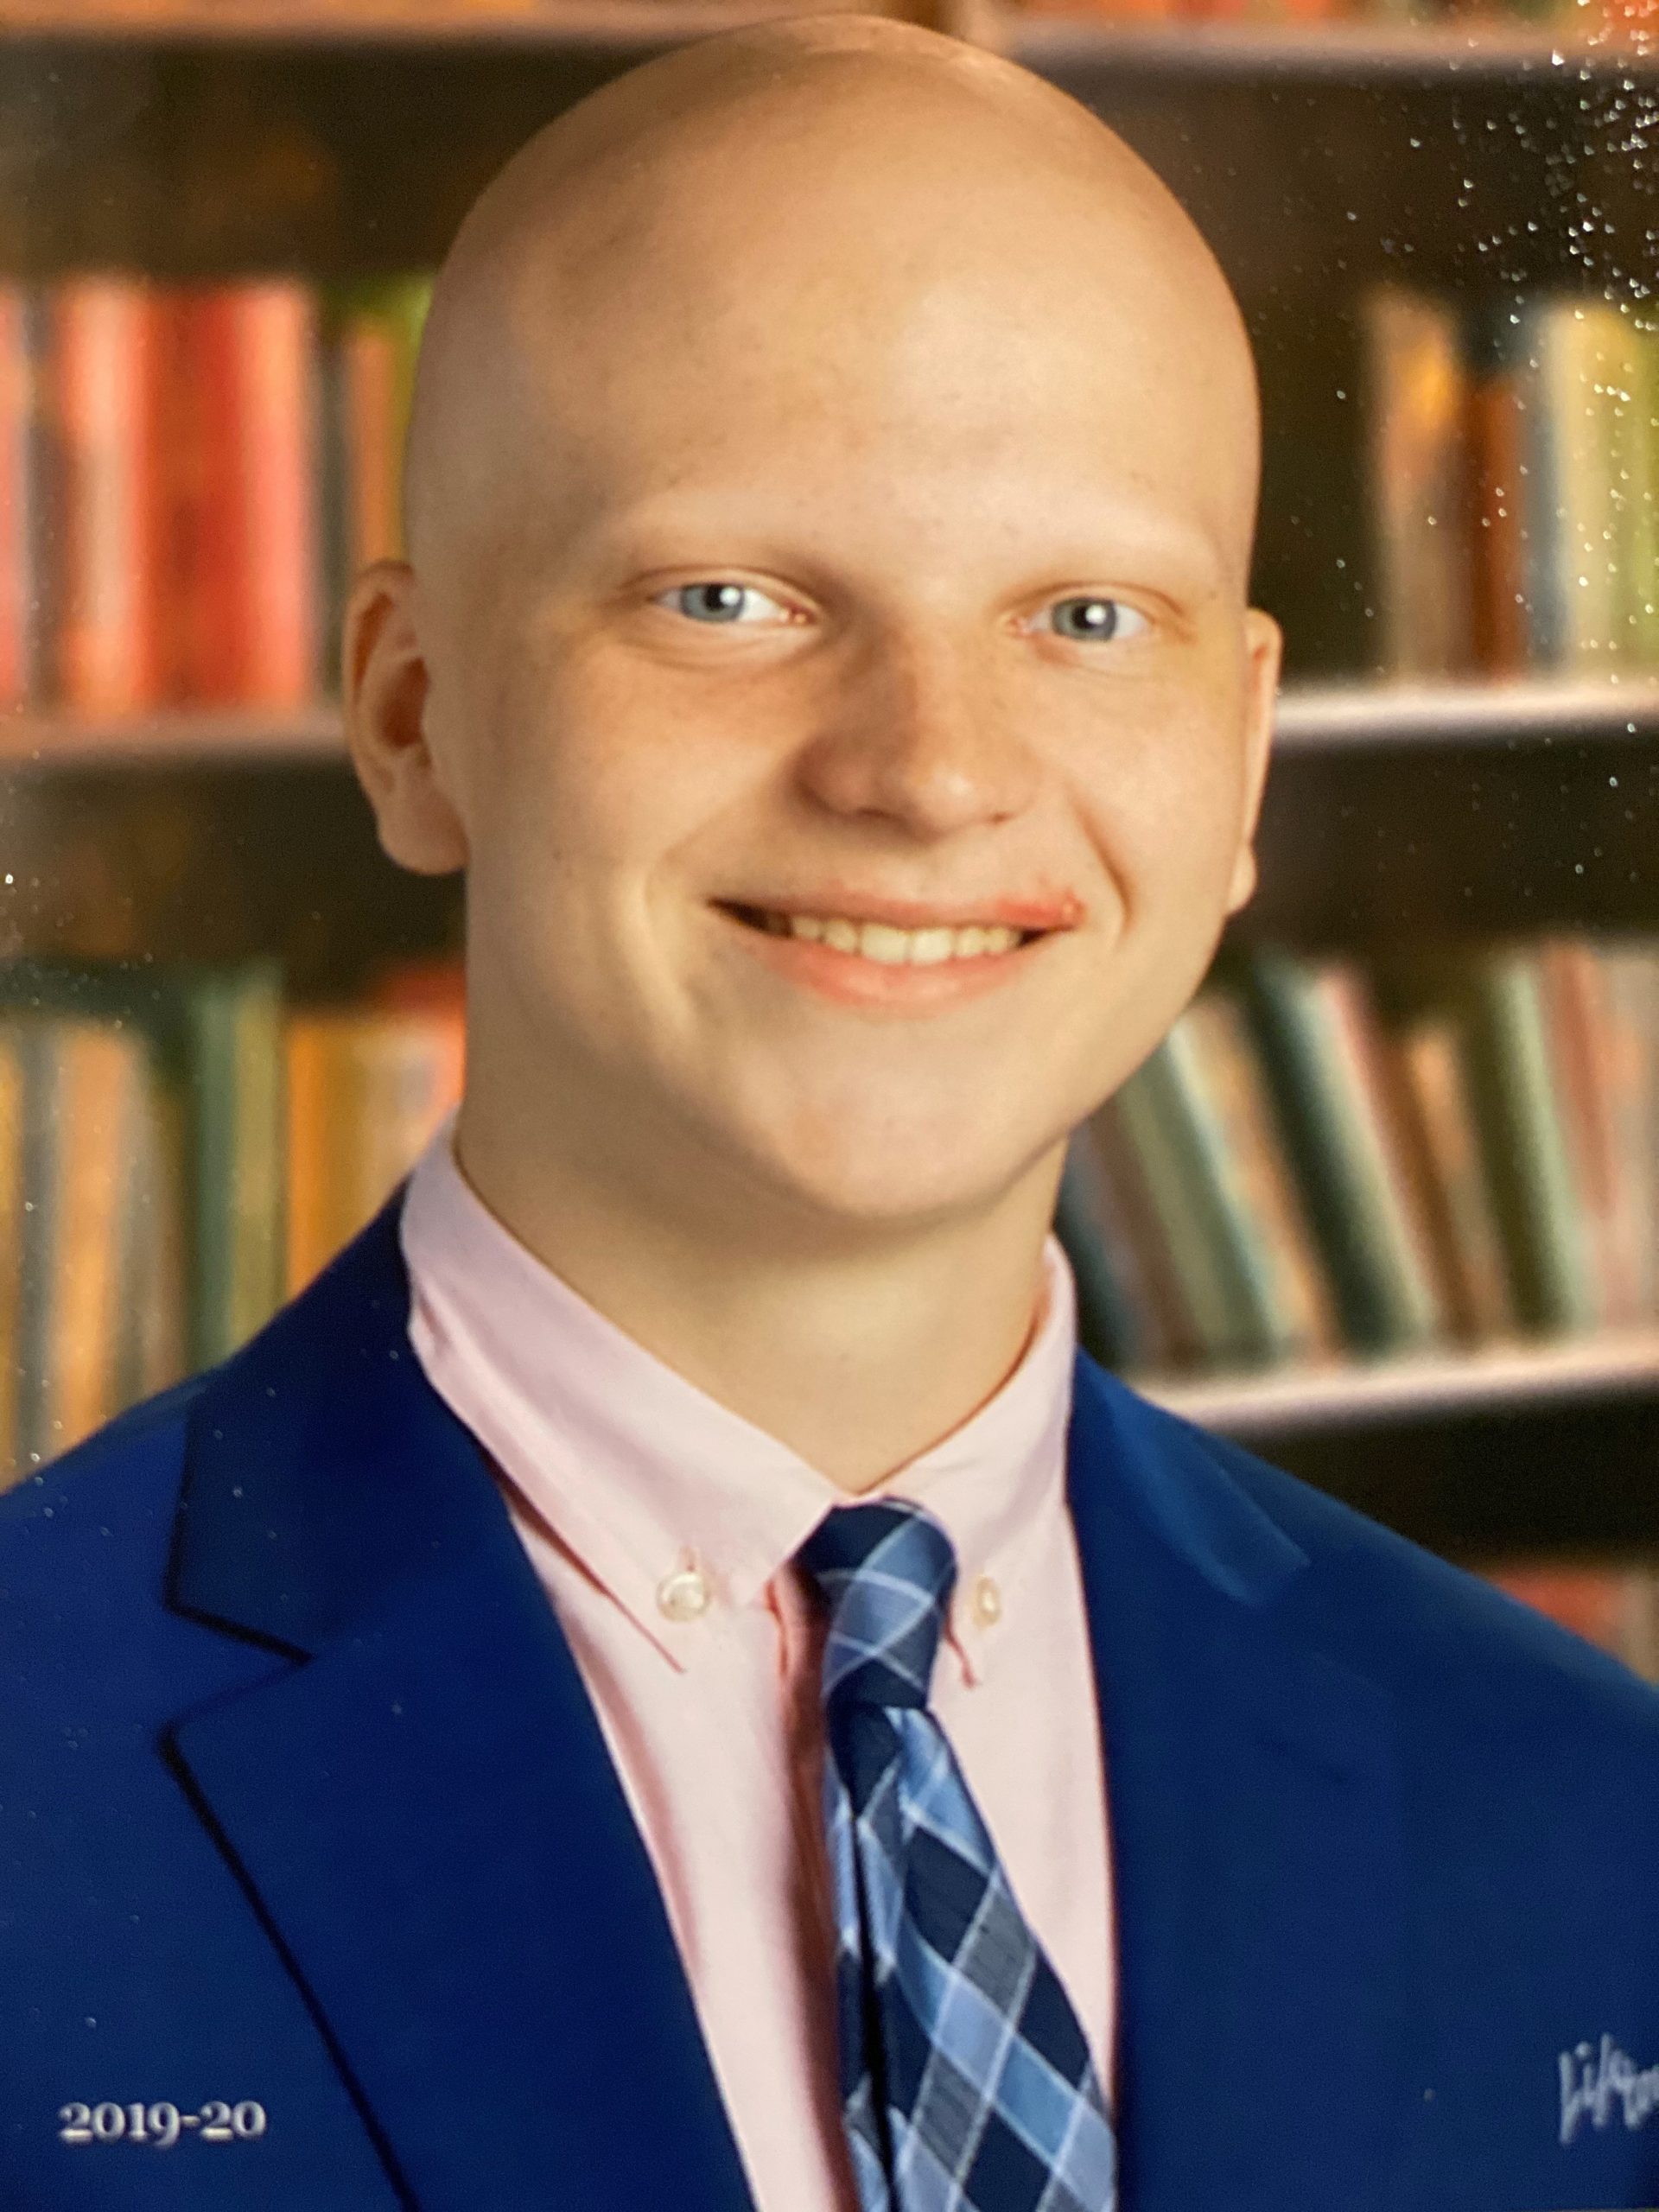 Ethans Alopecia awareness